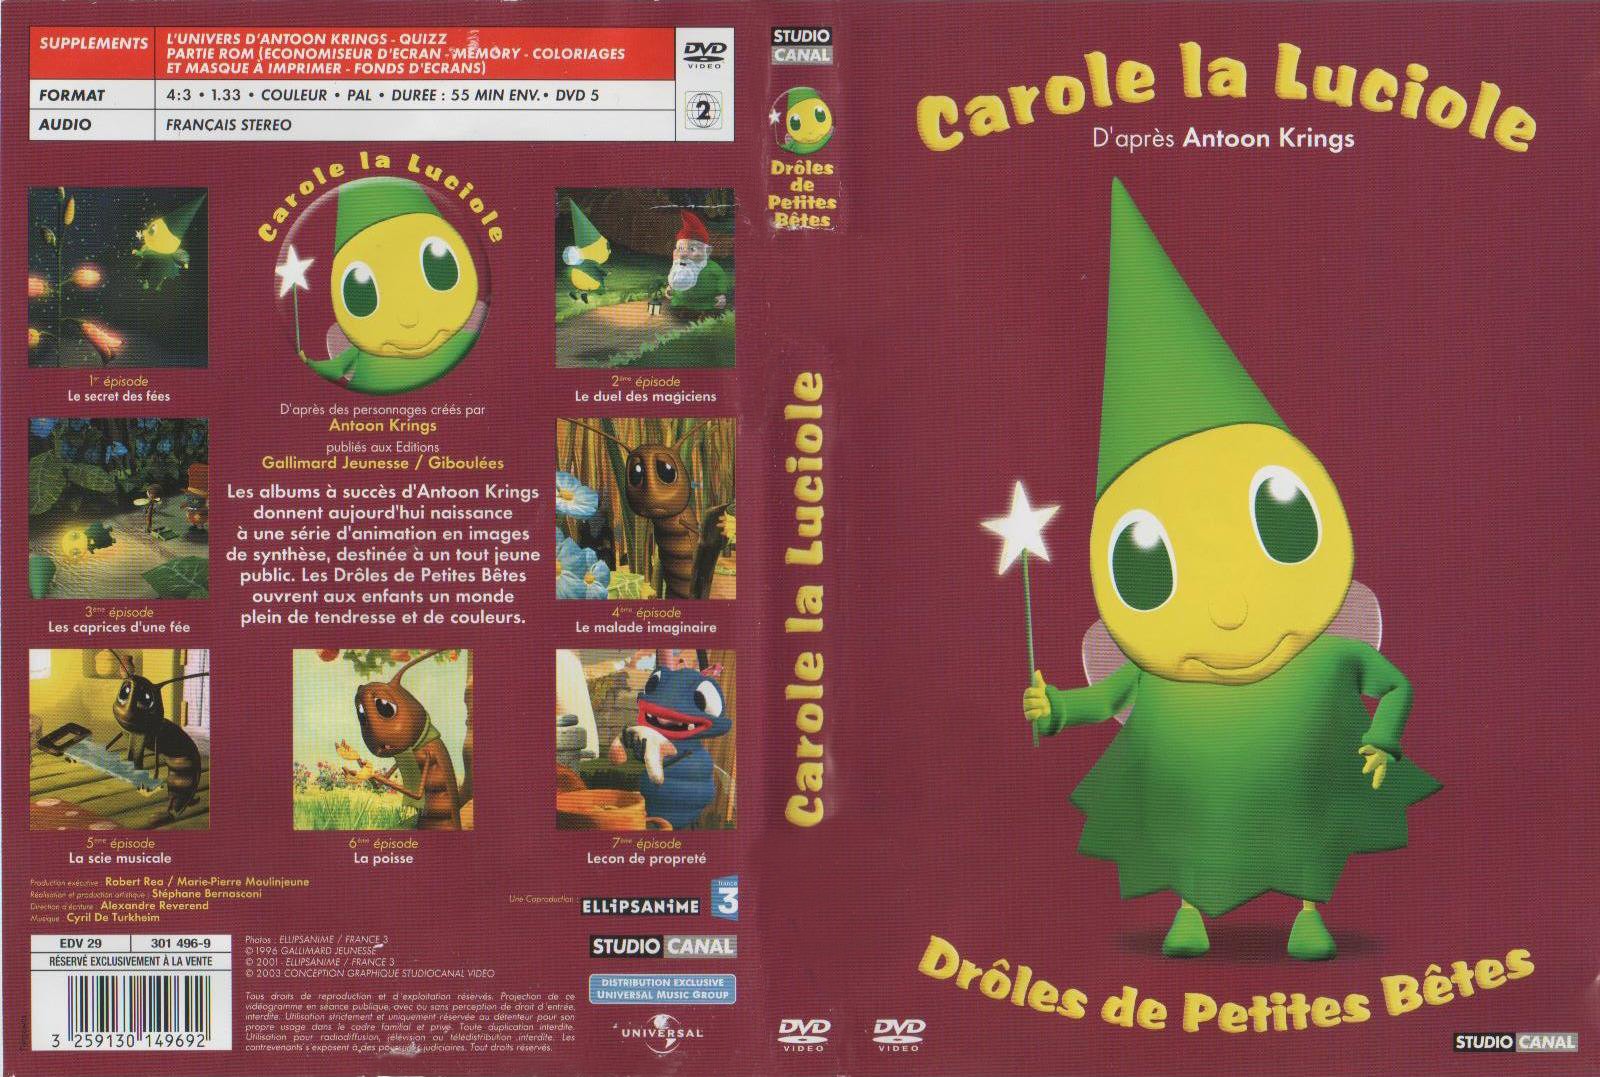 Jaquette DVD Droles de petites betes -  Carole la luciole